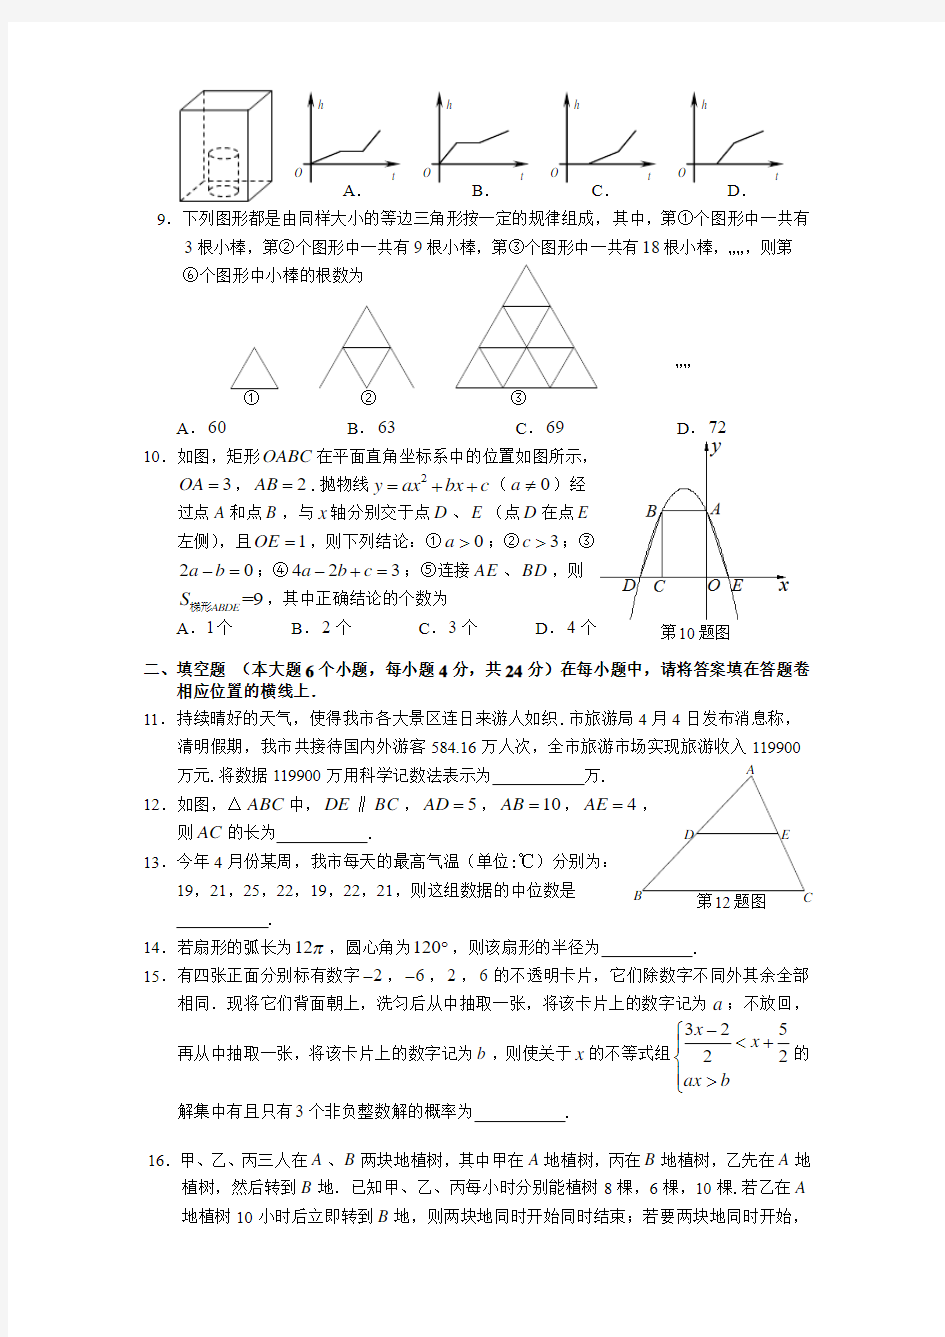 重庆一中初2012级11-12学年(下)半期试题——数学